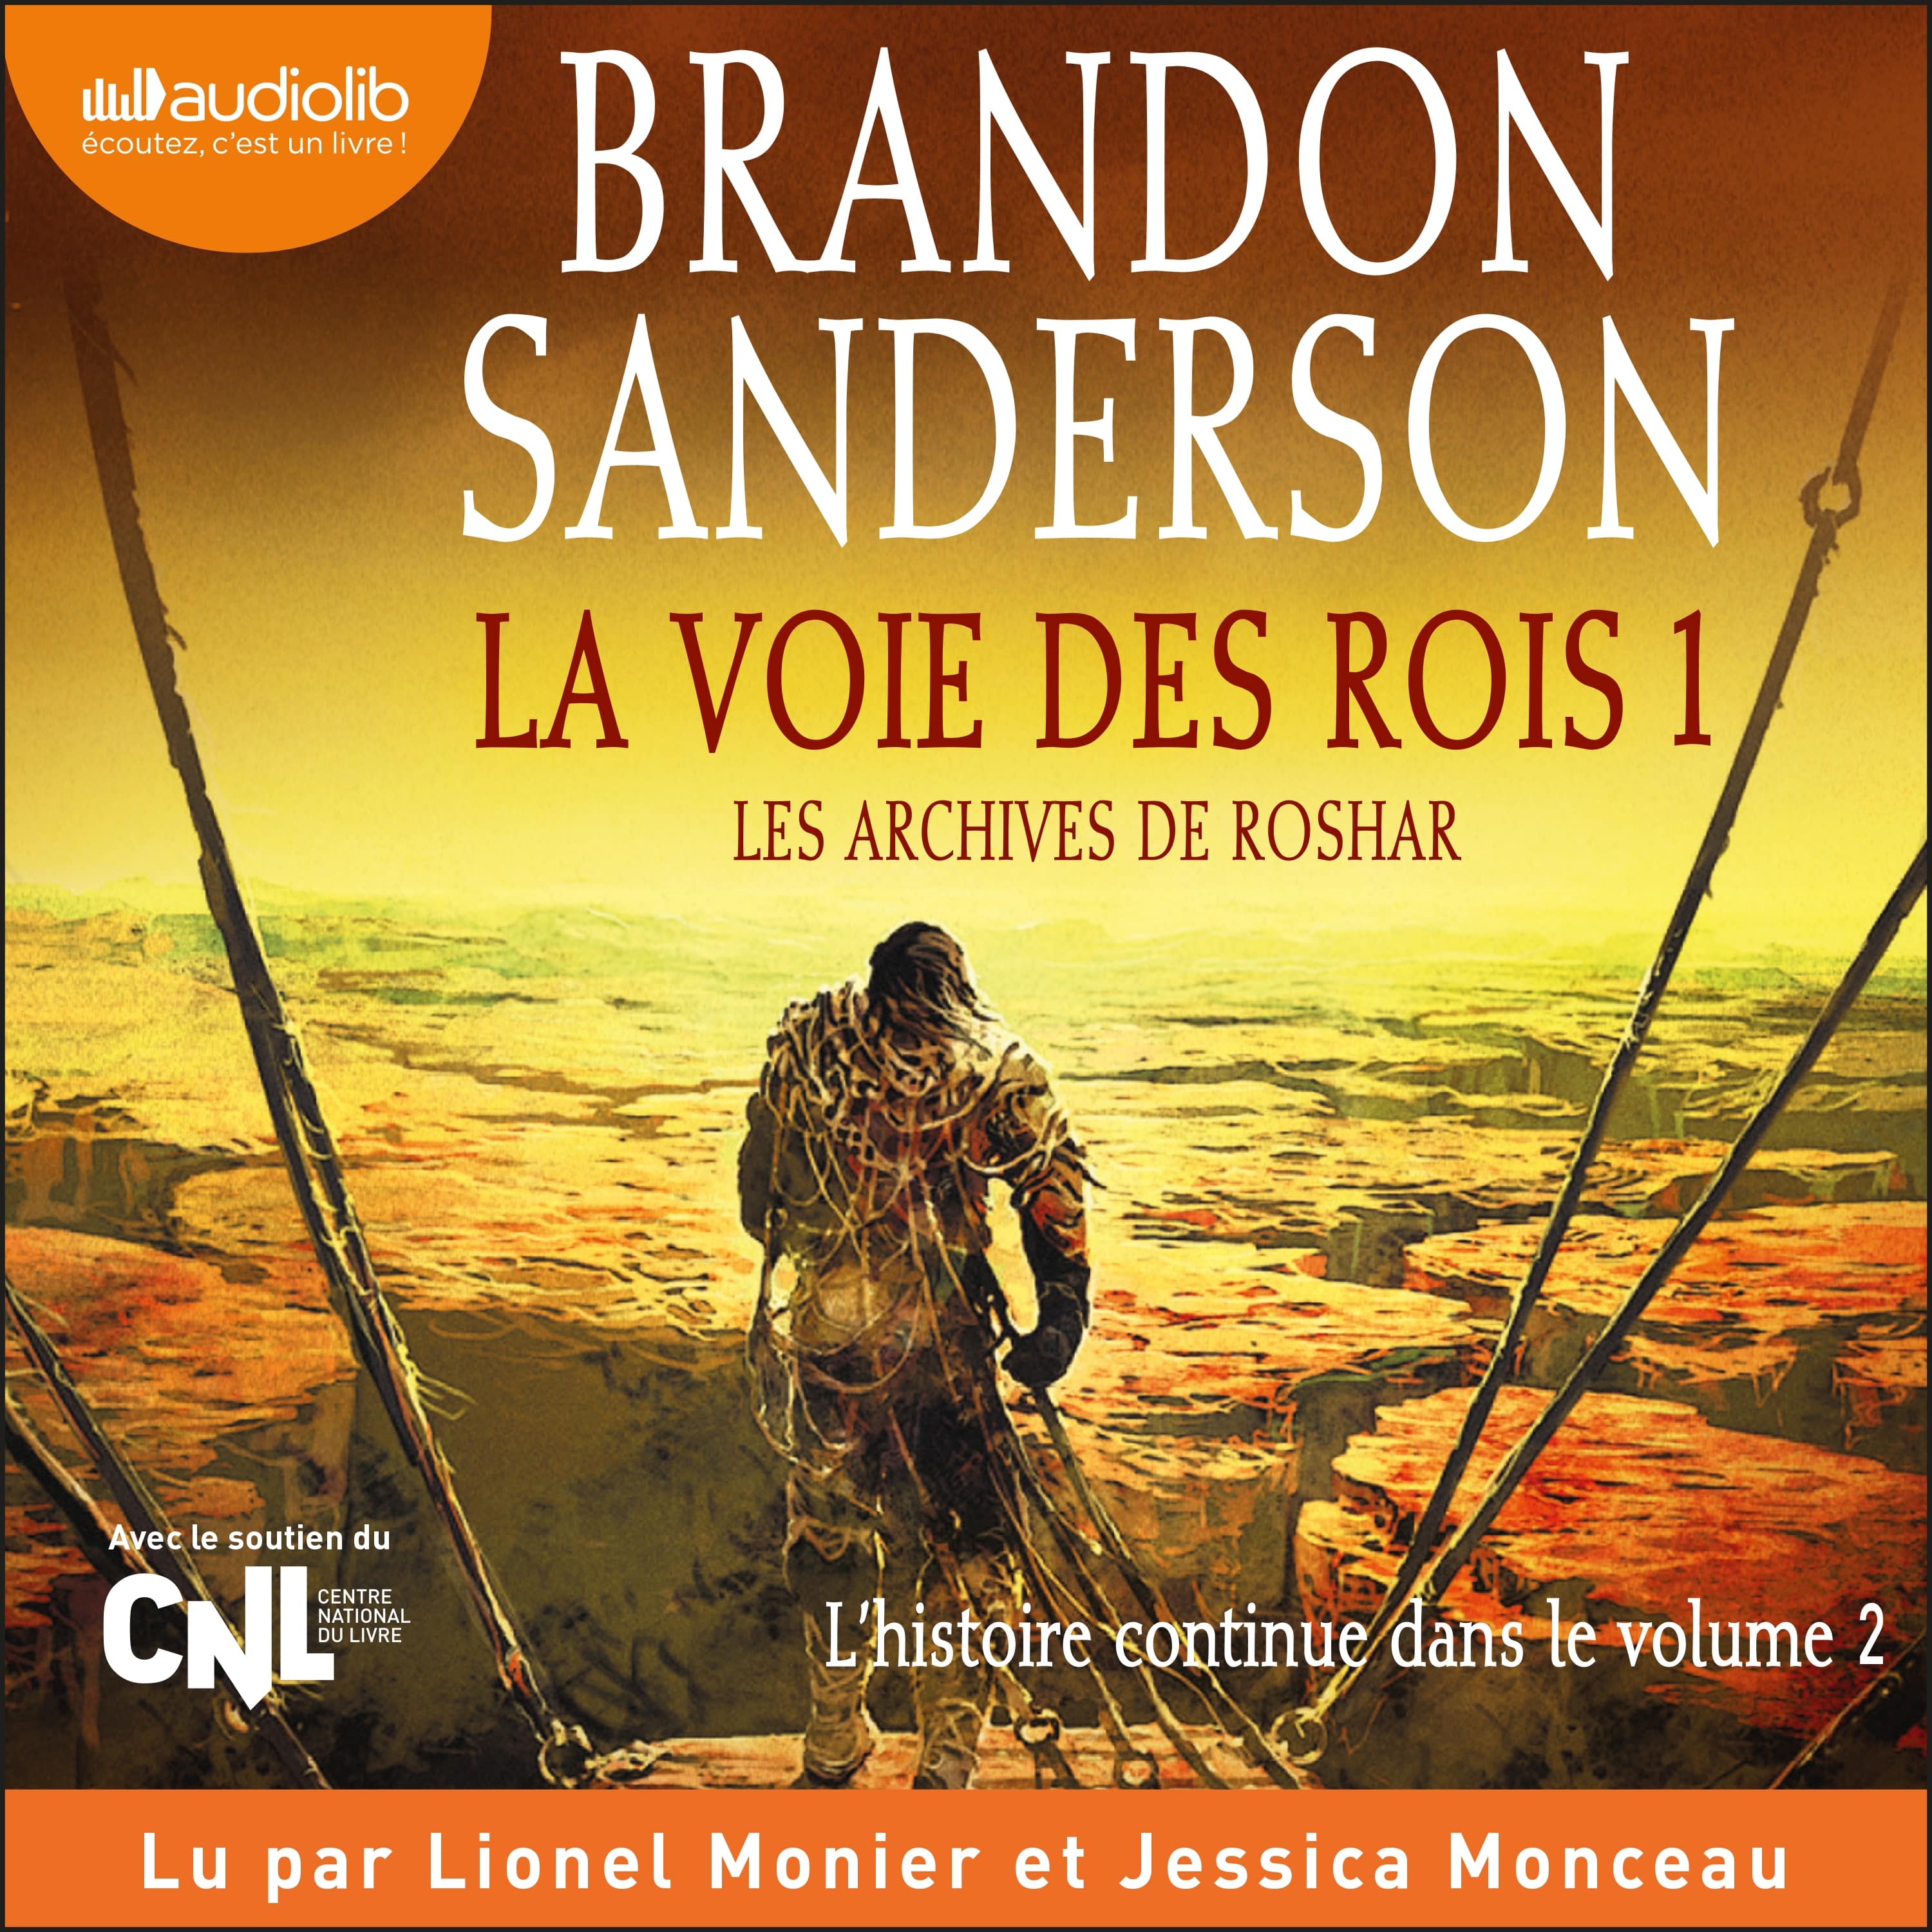 Couverture du livre audio La Voie des rois, volume 1 De Brandon Sanderson 